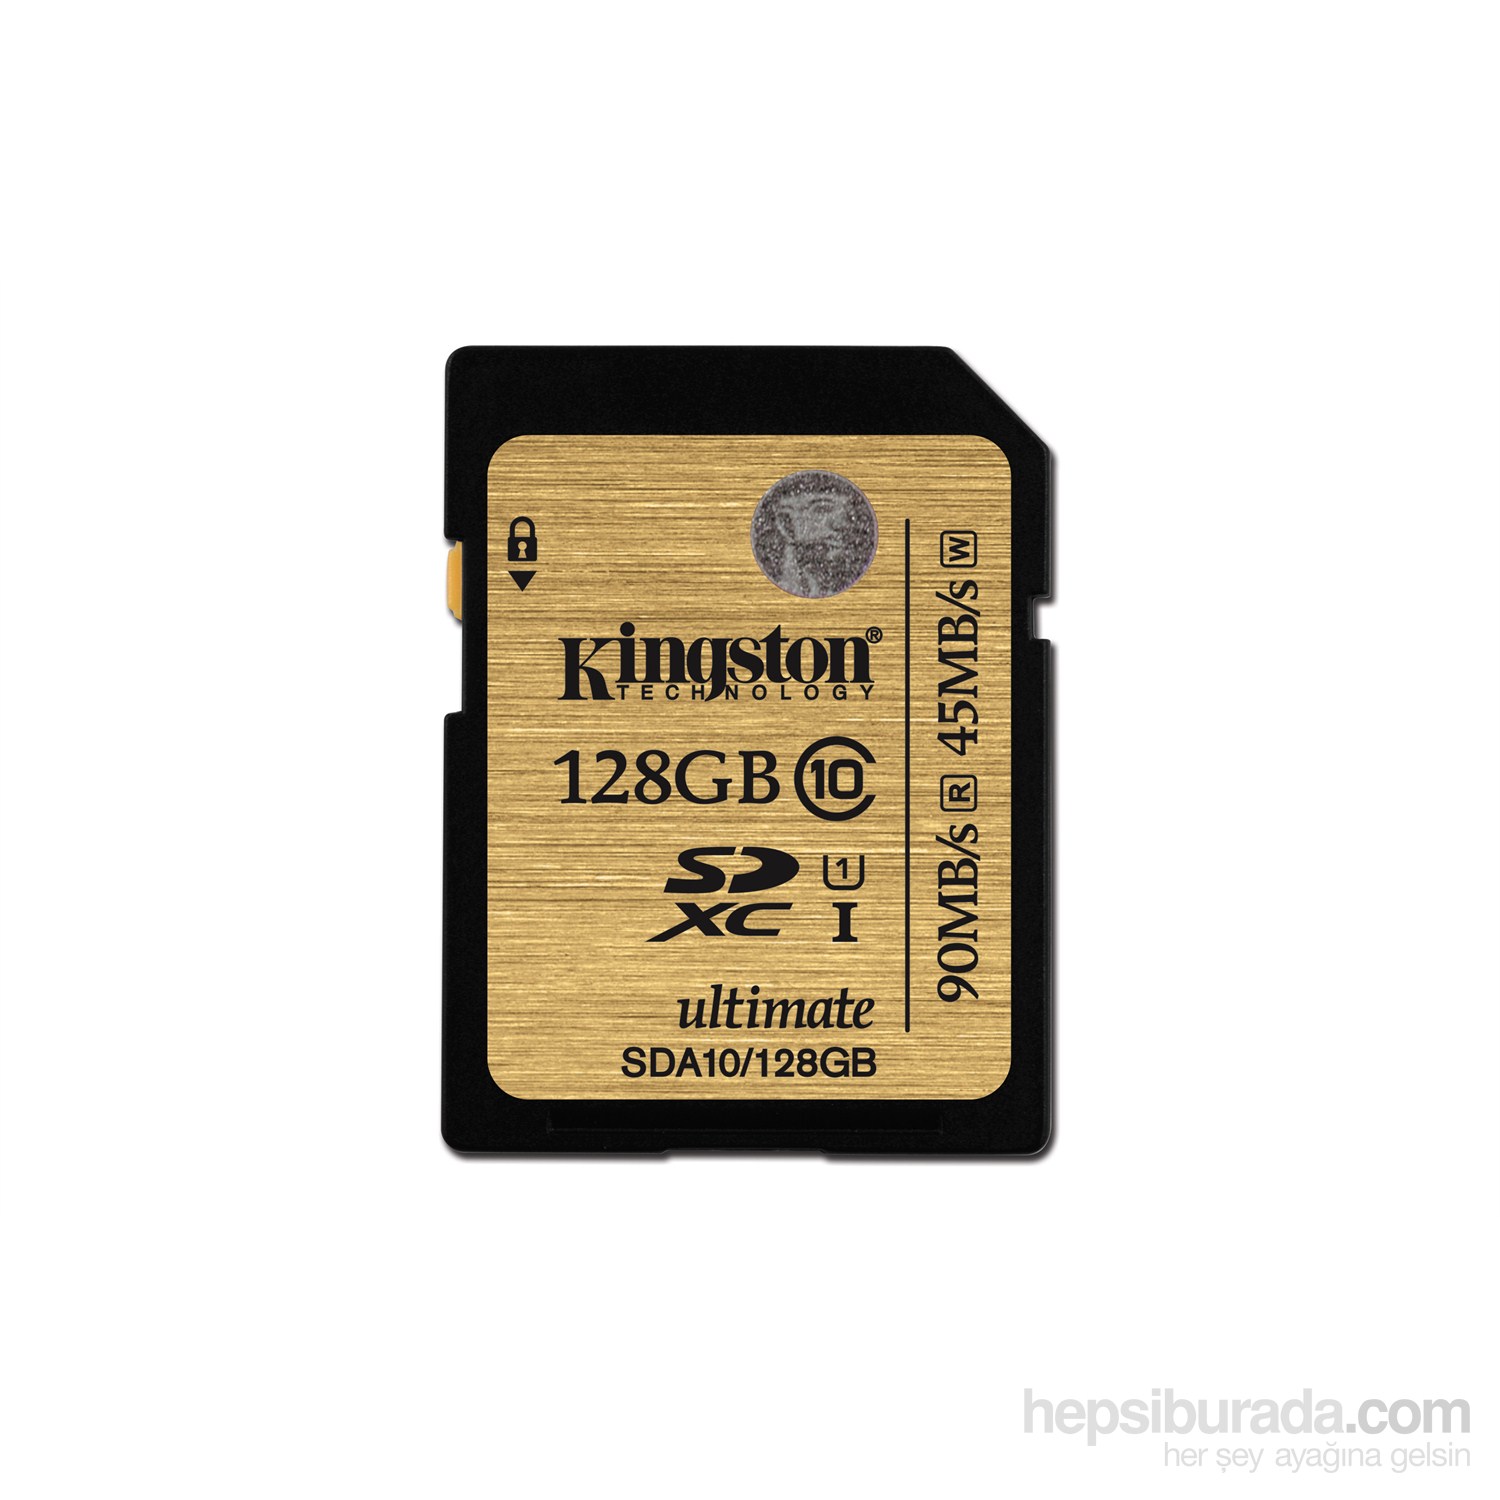 Kingston 128GB SDXC Class 10 UHS-I Ultimate Hafıza Kartı SDA10/128GB